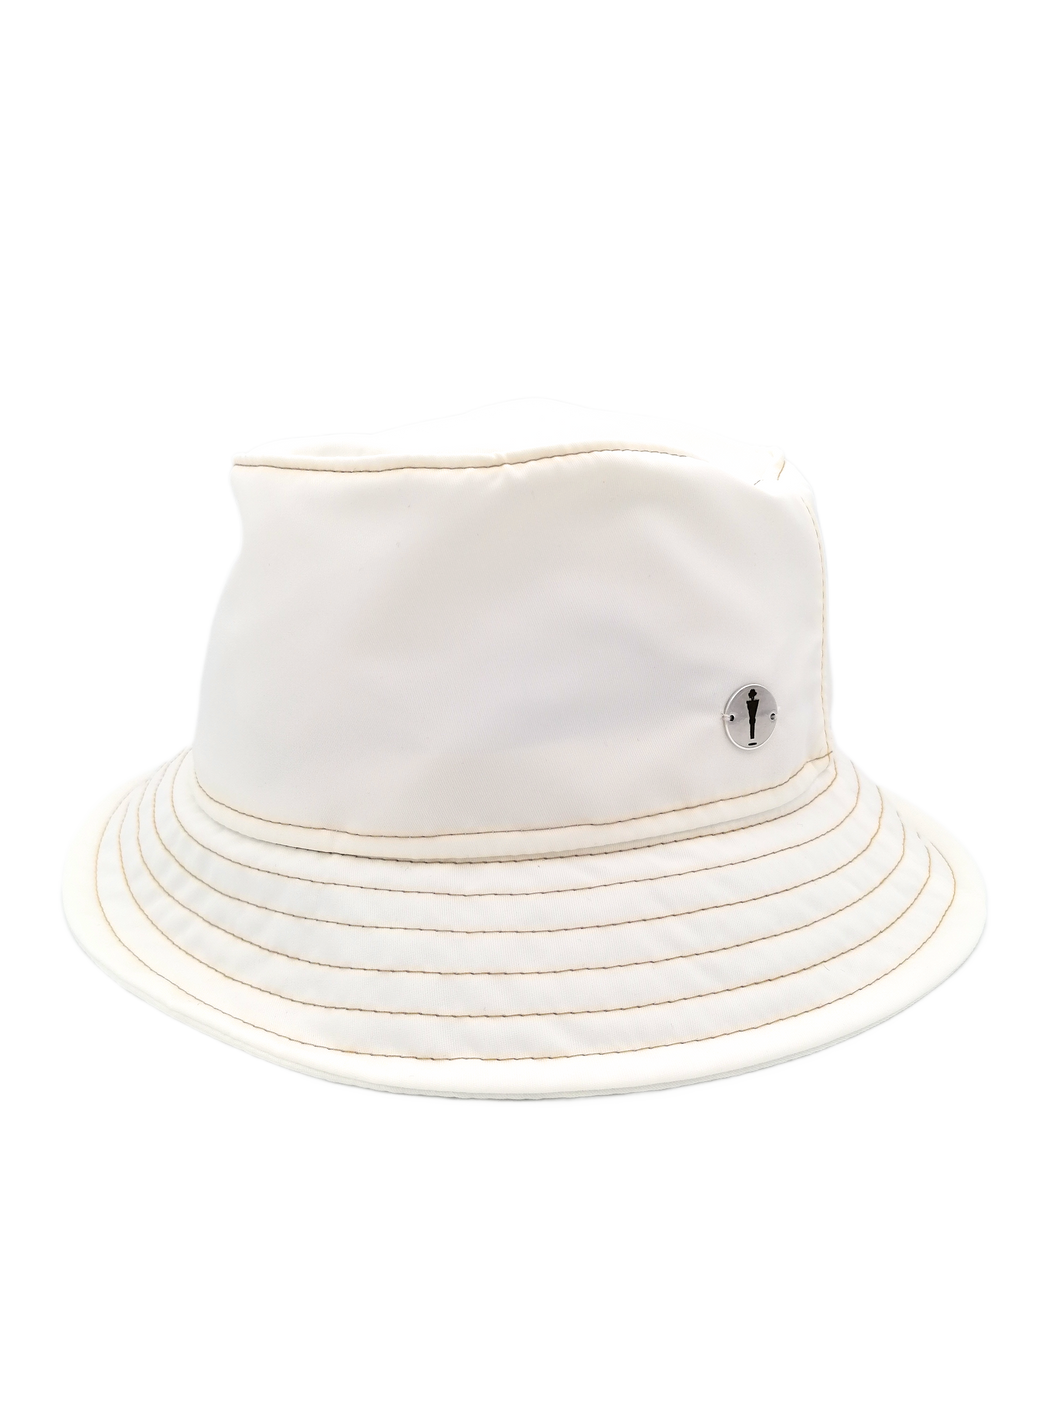 Cappello modello bucket hat ripiegabile del brand Accapofitto. Tessuto impermeabile colore bianco